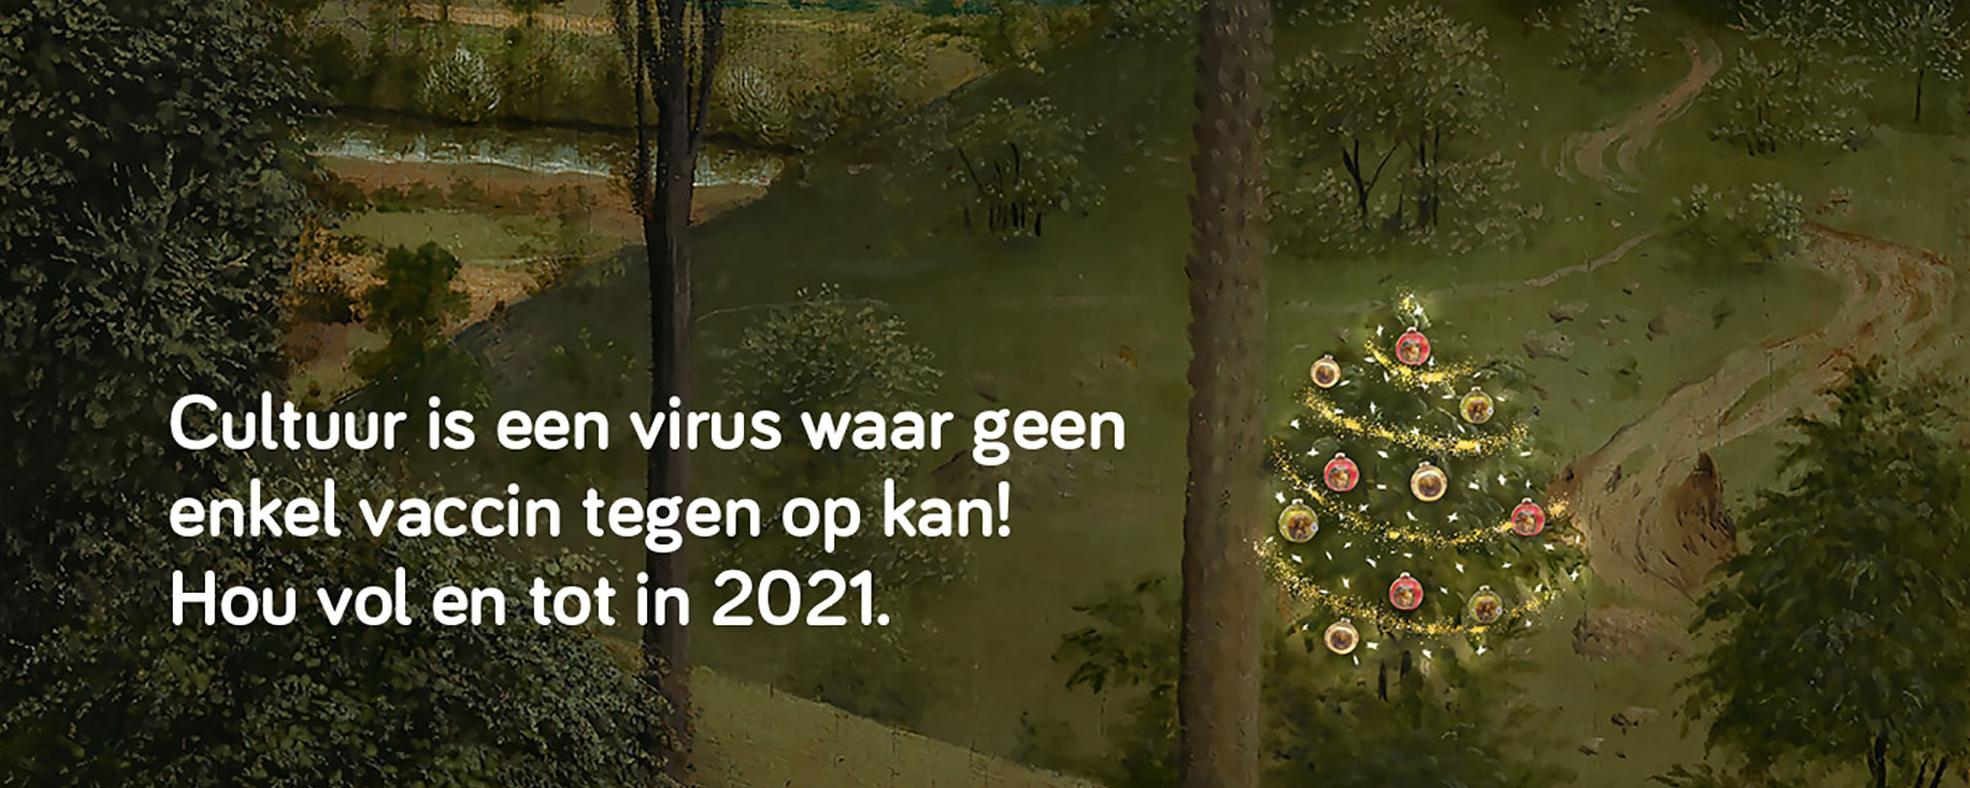 Beste wensen voor 2021 van Cultuur Gent